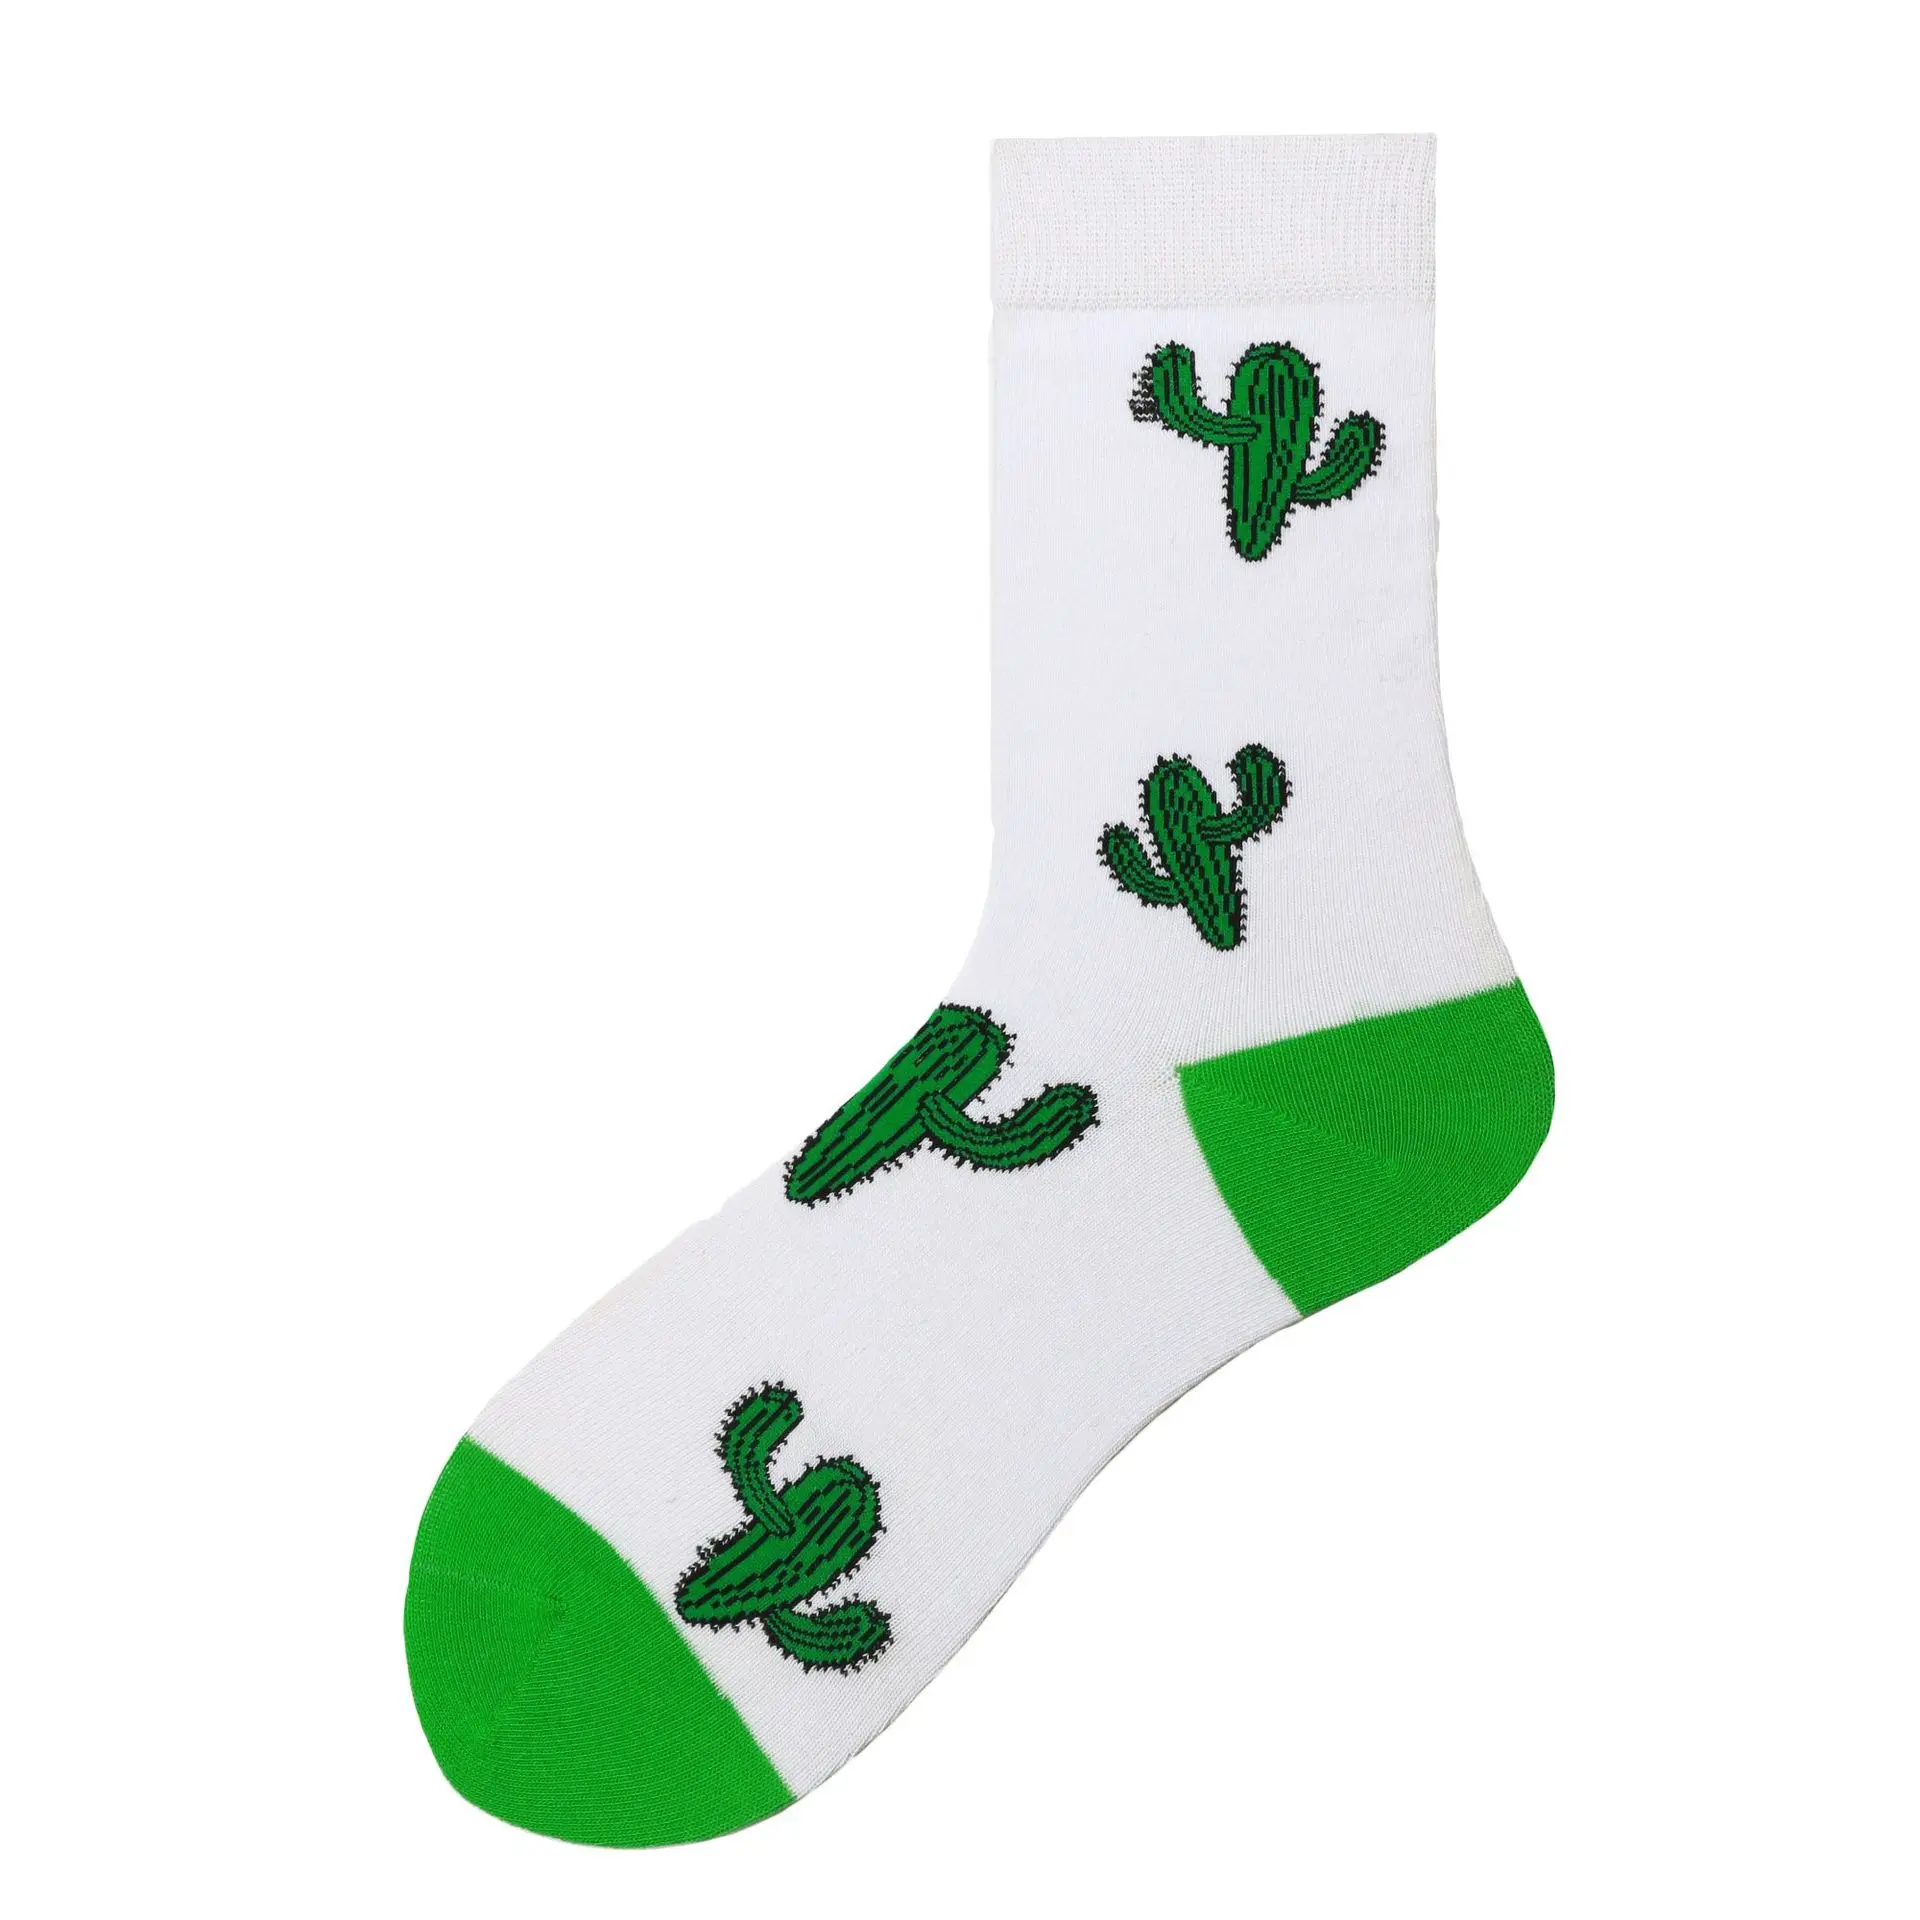 Новые счастливые мужские носки дамы еда животный мир, растение кактус новинка носки чесаный хлопок смешные мужские носки большого размера с круглым вырезом носки